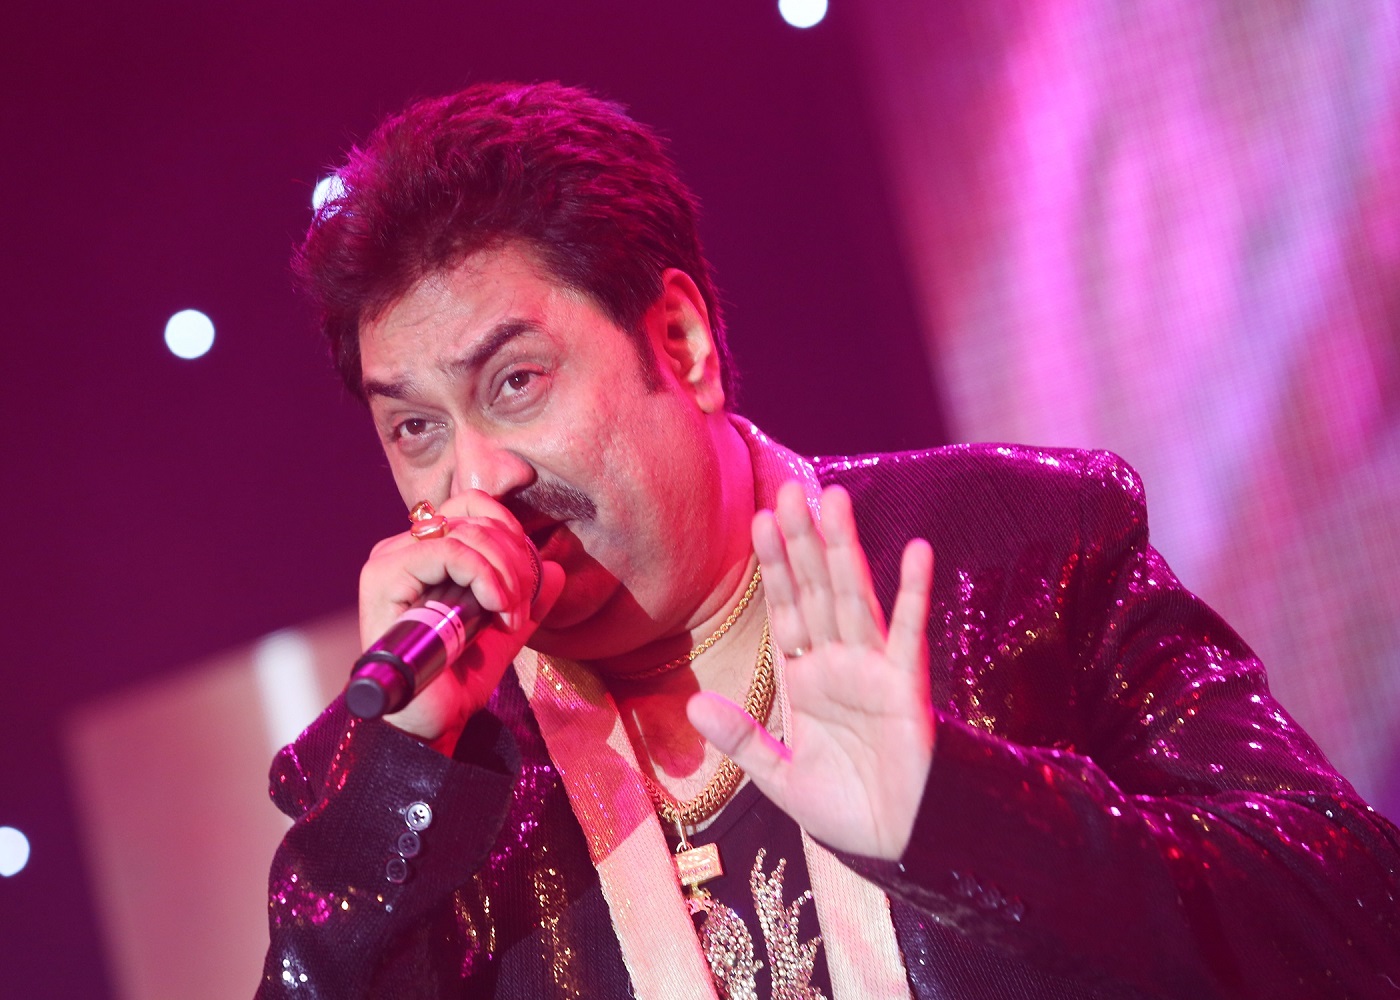 Kumar sanu concert usa 2022